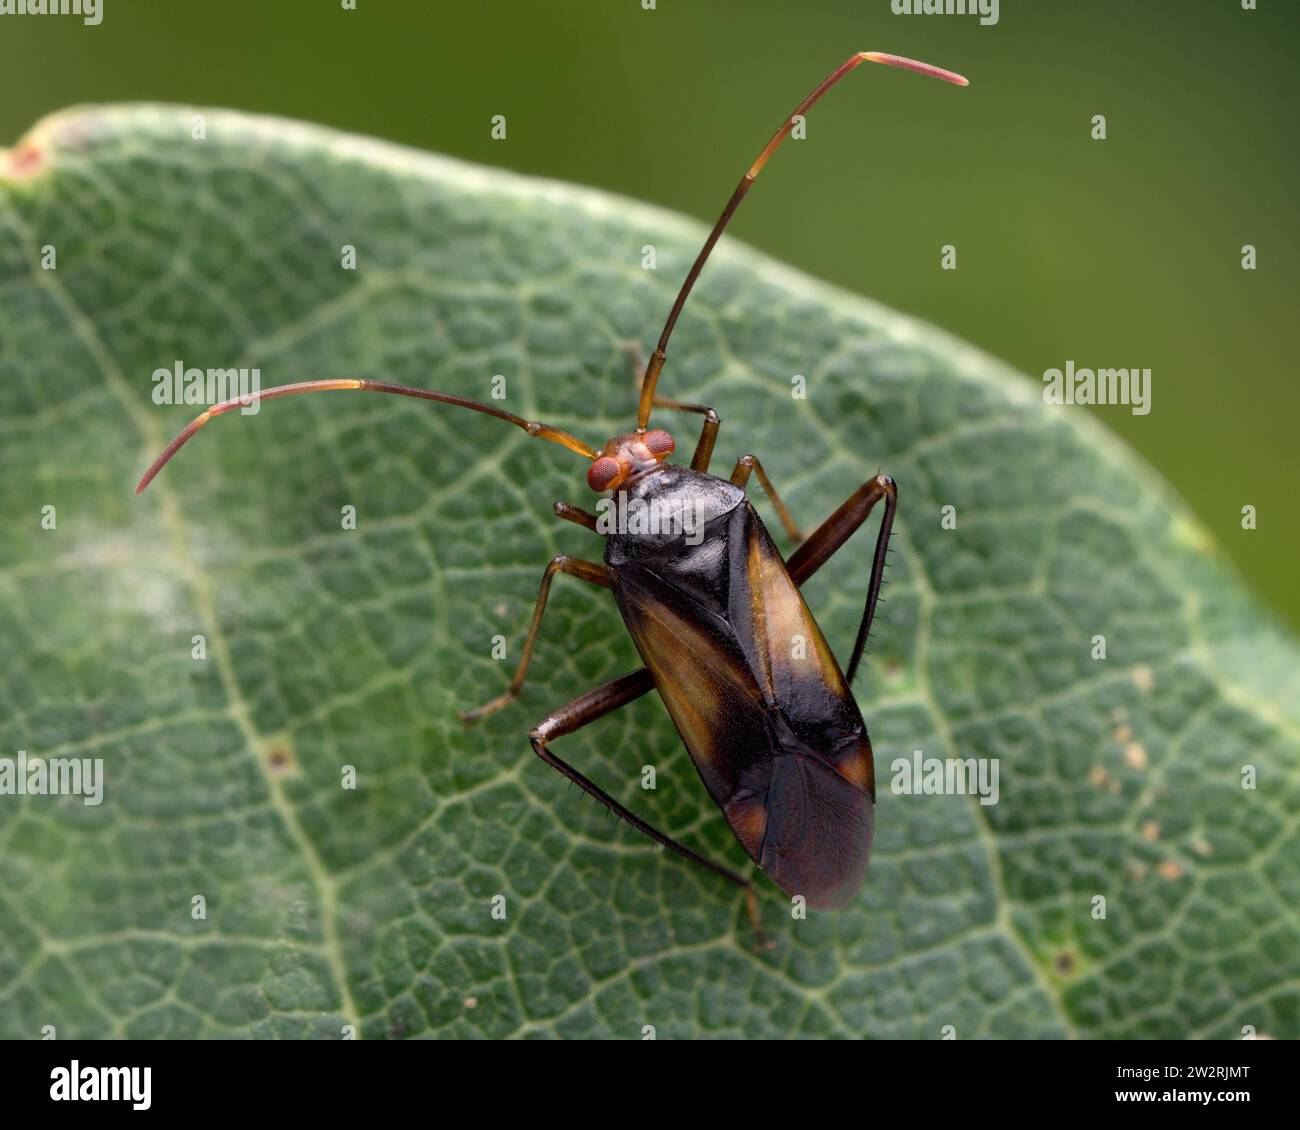 Megacoelum-Infusum-Mirid-Käfer auf Eichenblatt. Tipperary, Irland Stockfoto